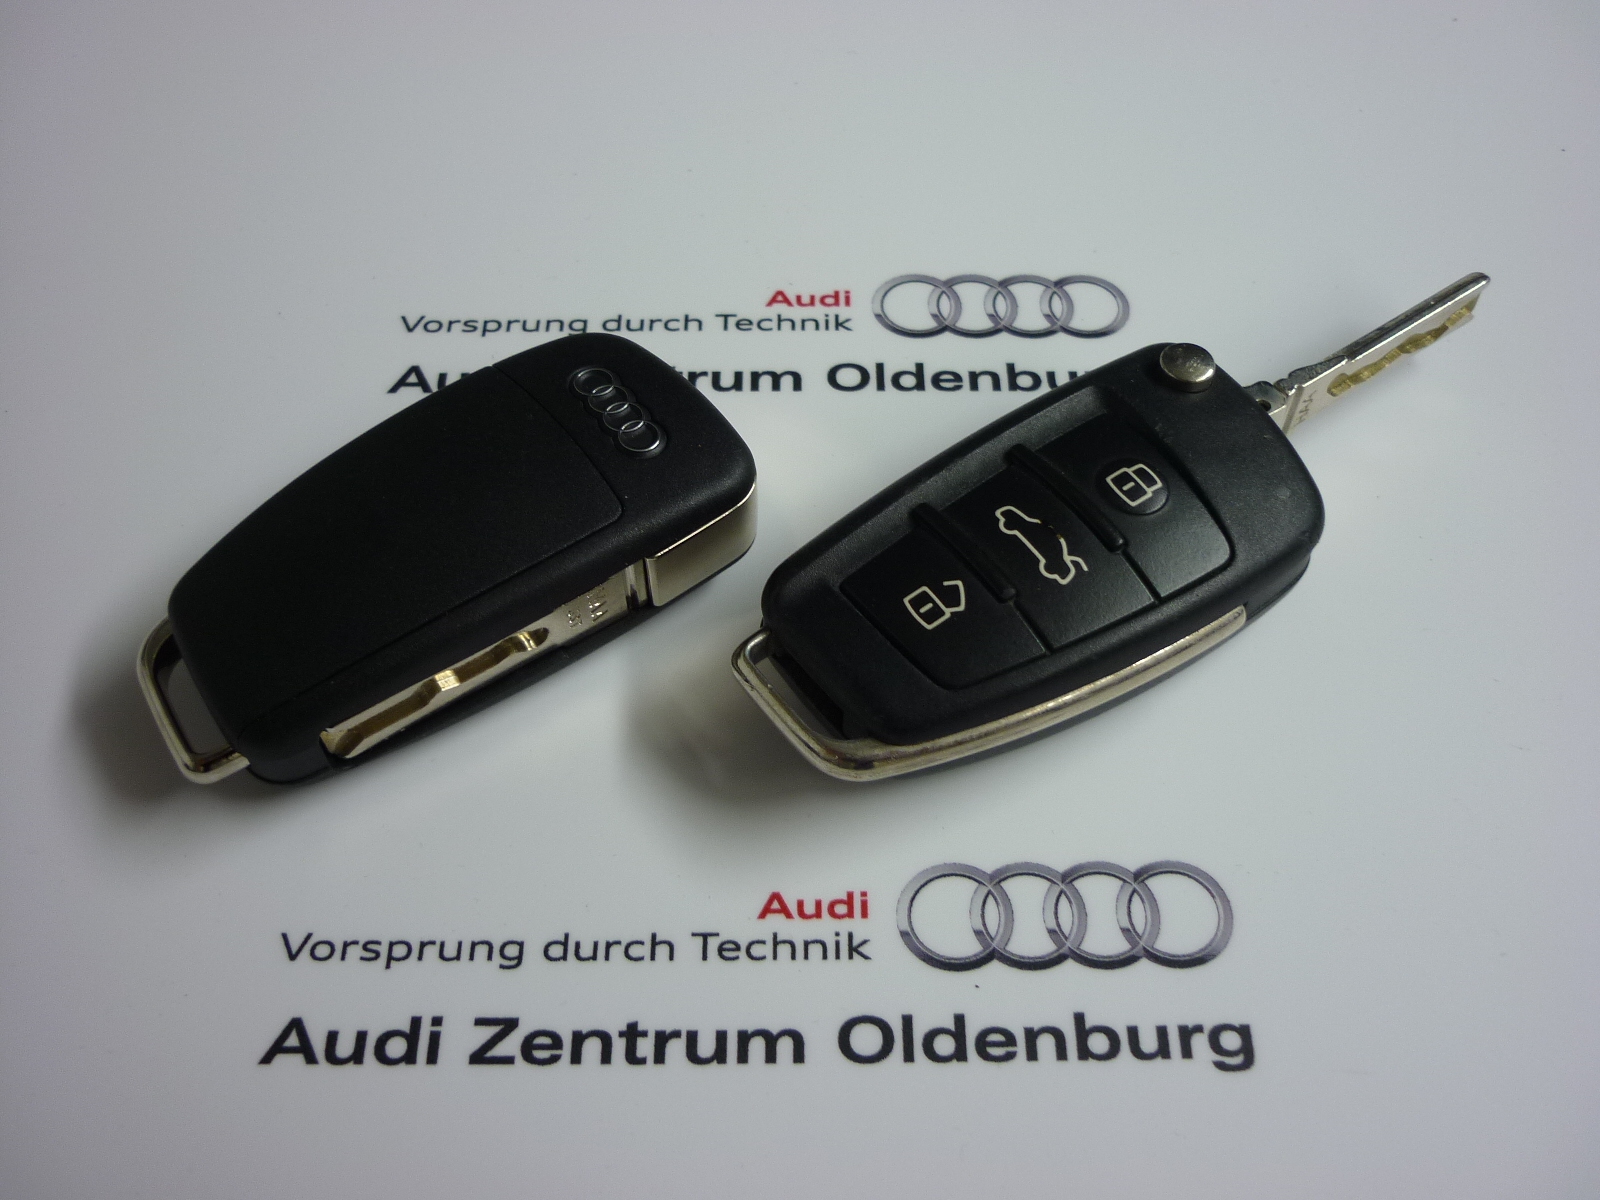 Audi Schlüsselblende quattro, lackiert in verschiedenen Farben, Schlüsselanhänger